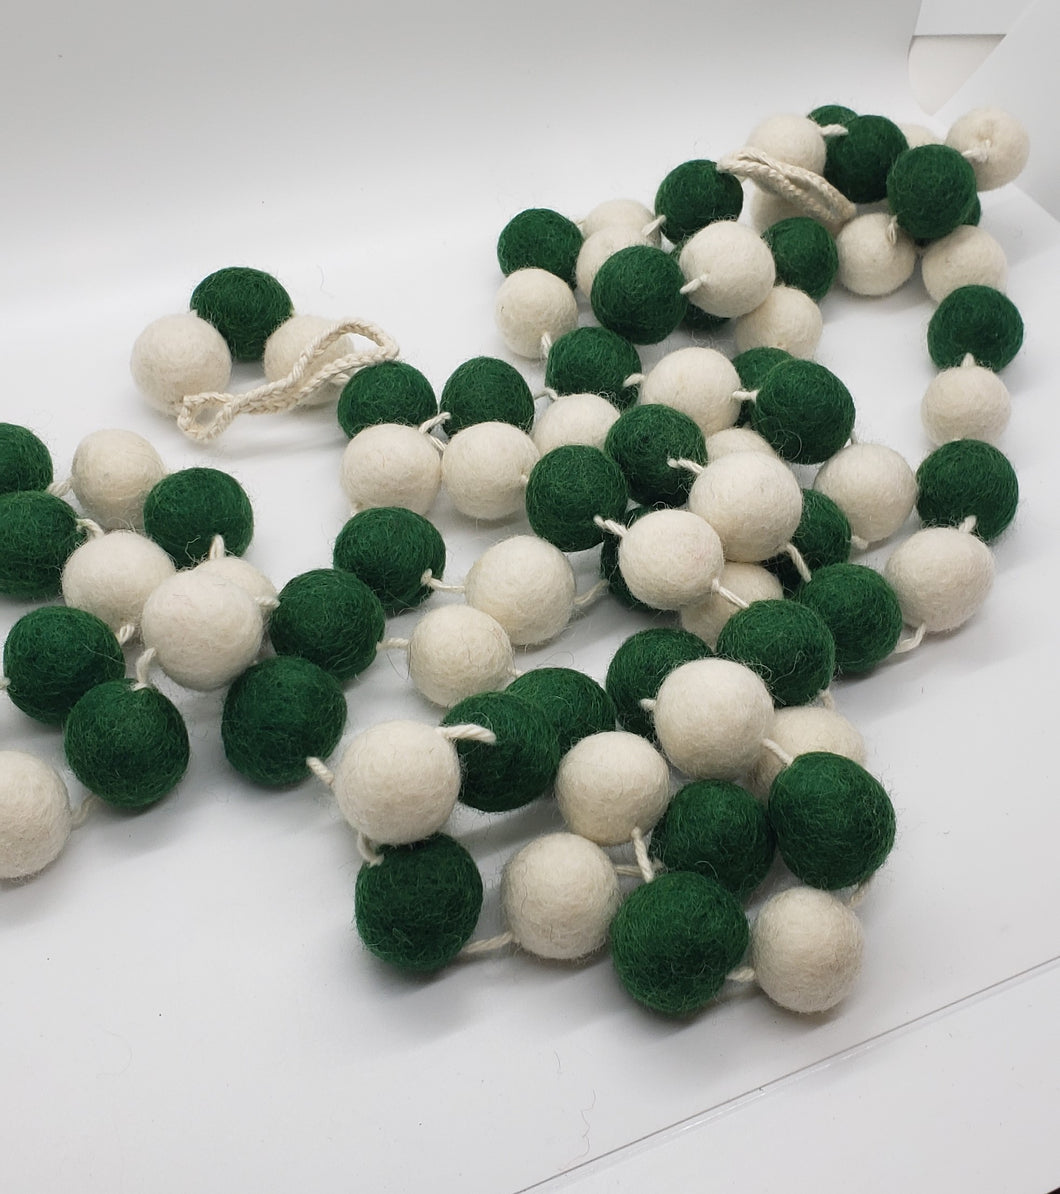 Felt Ball Garland - 10' Green & White